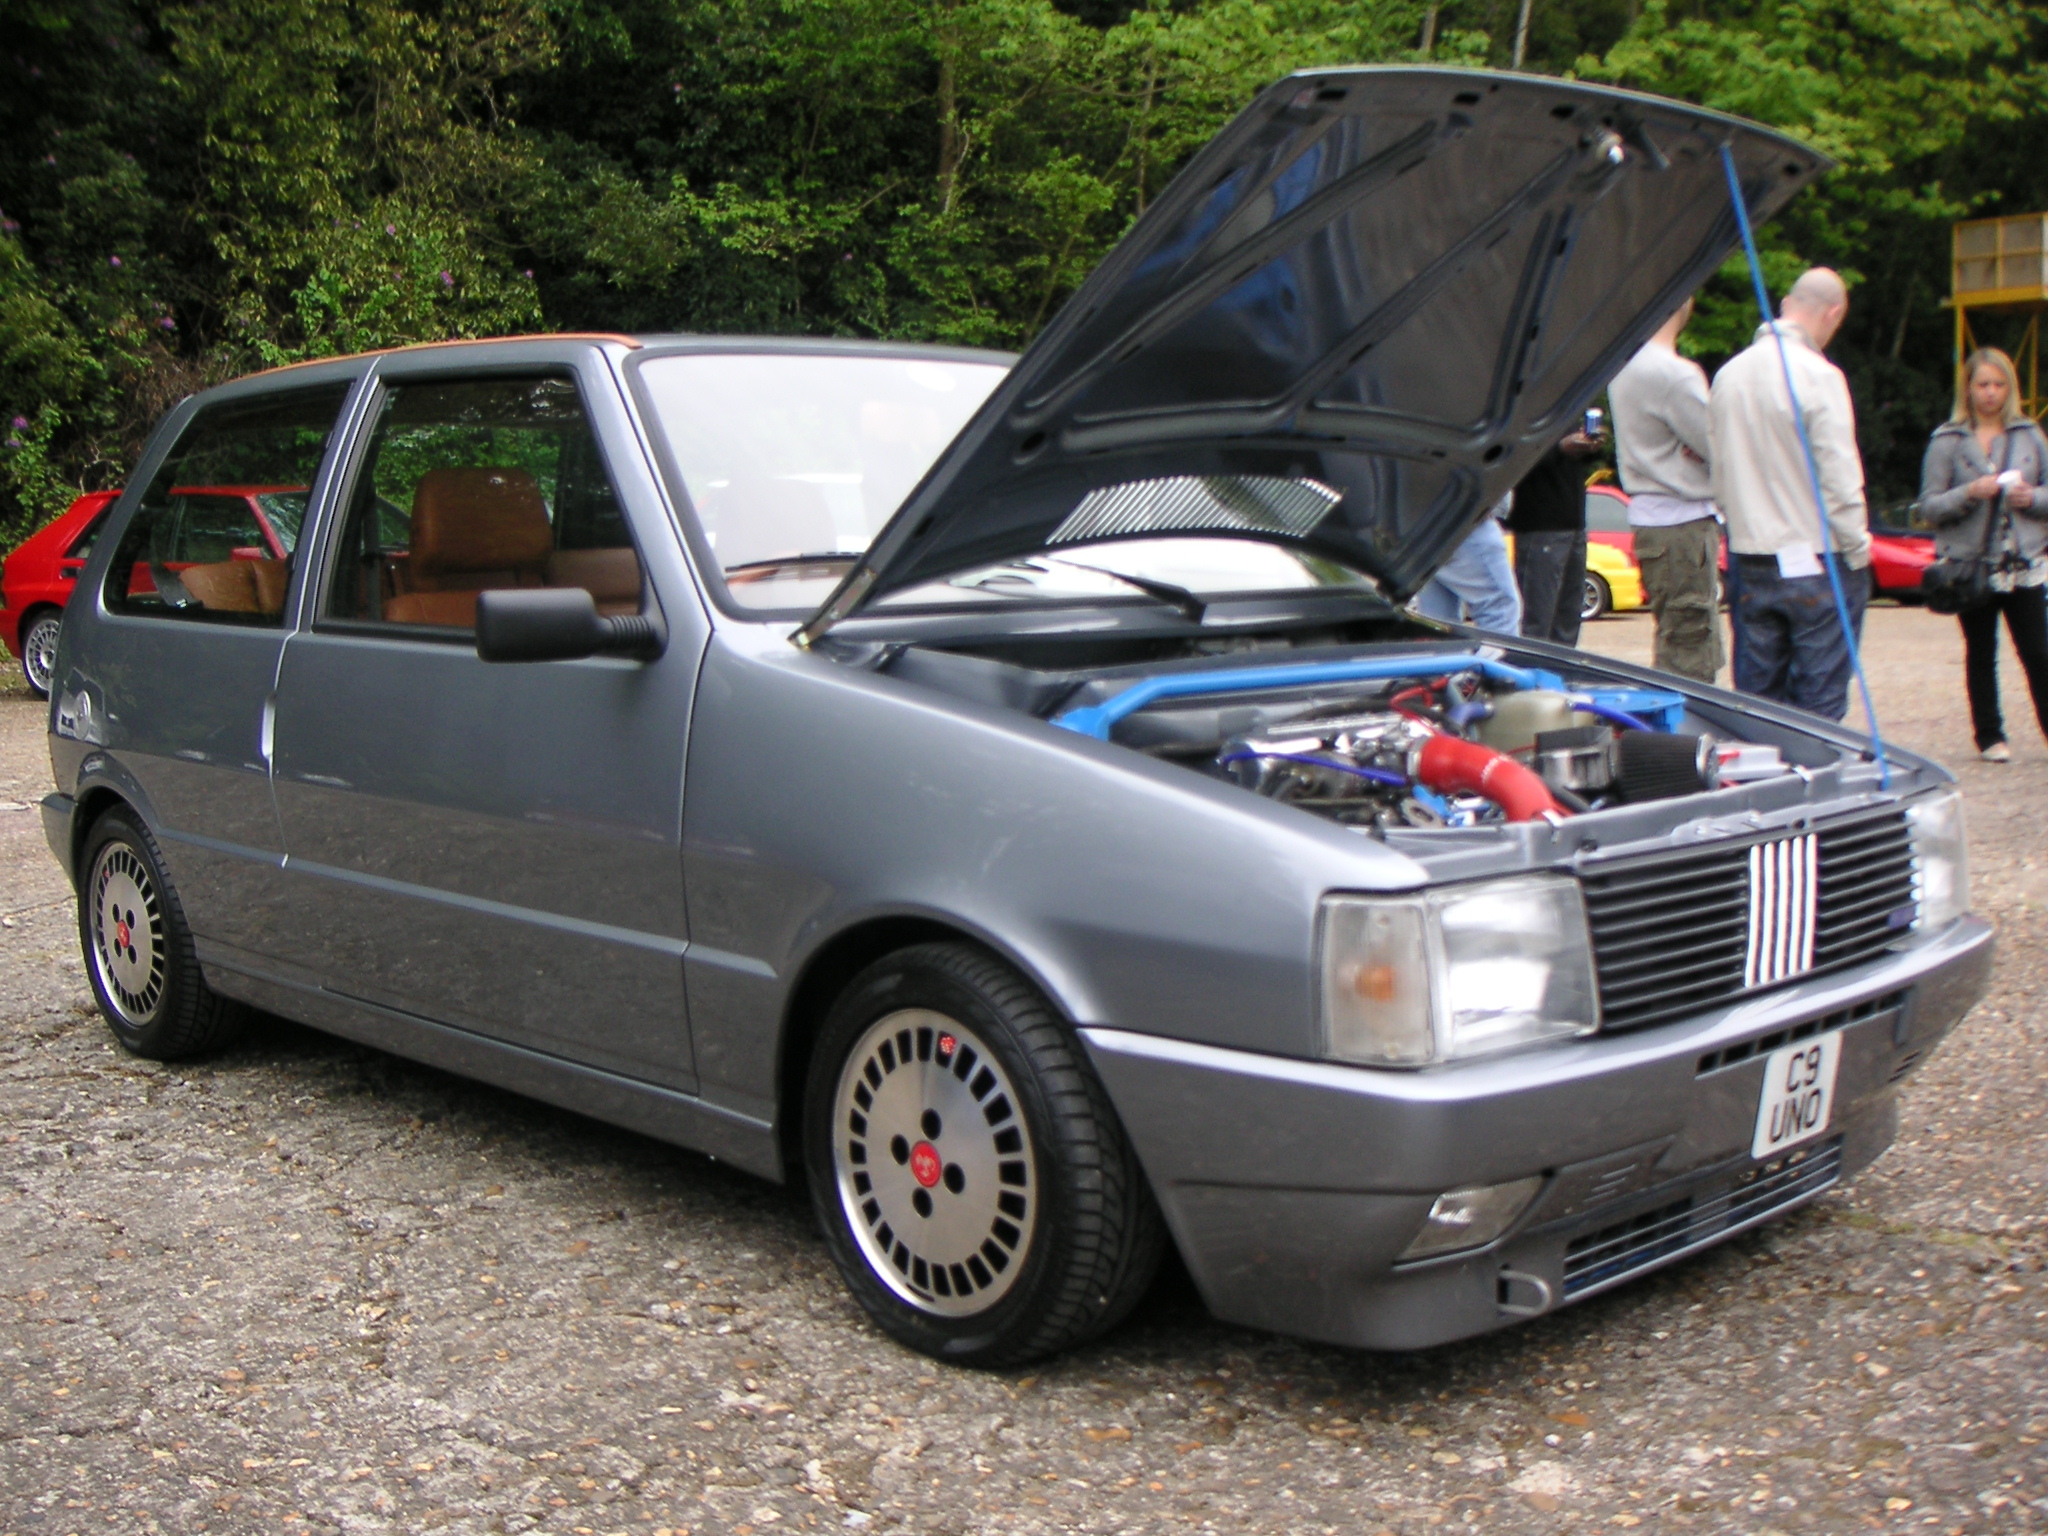 Fiat Uno Turbo Mk1. 1988 MK1 Fiat Uno Turbo i.e.